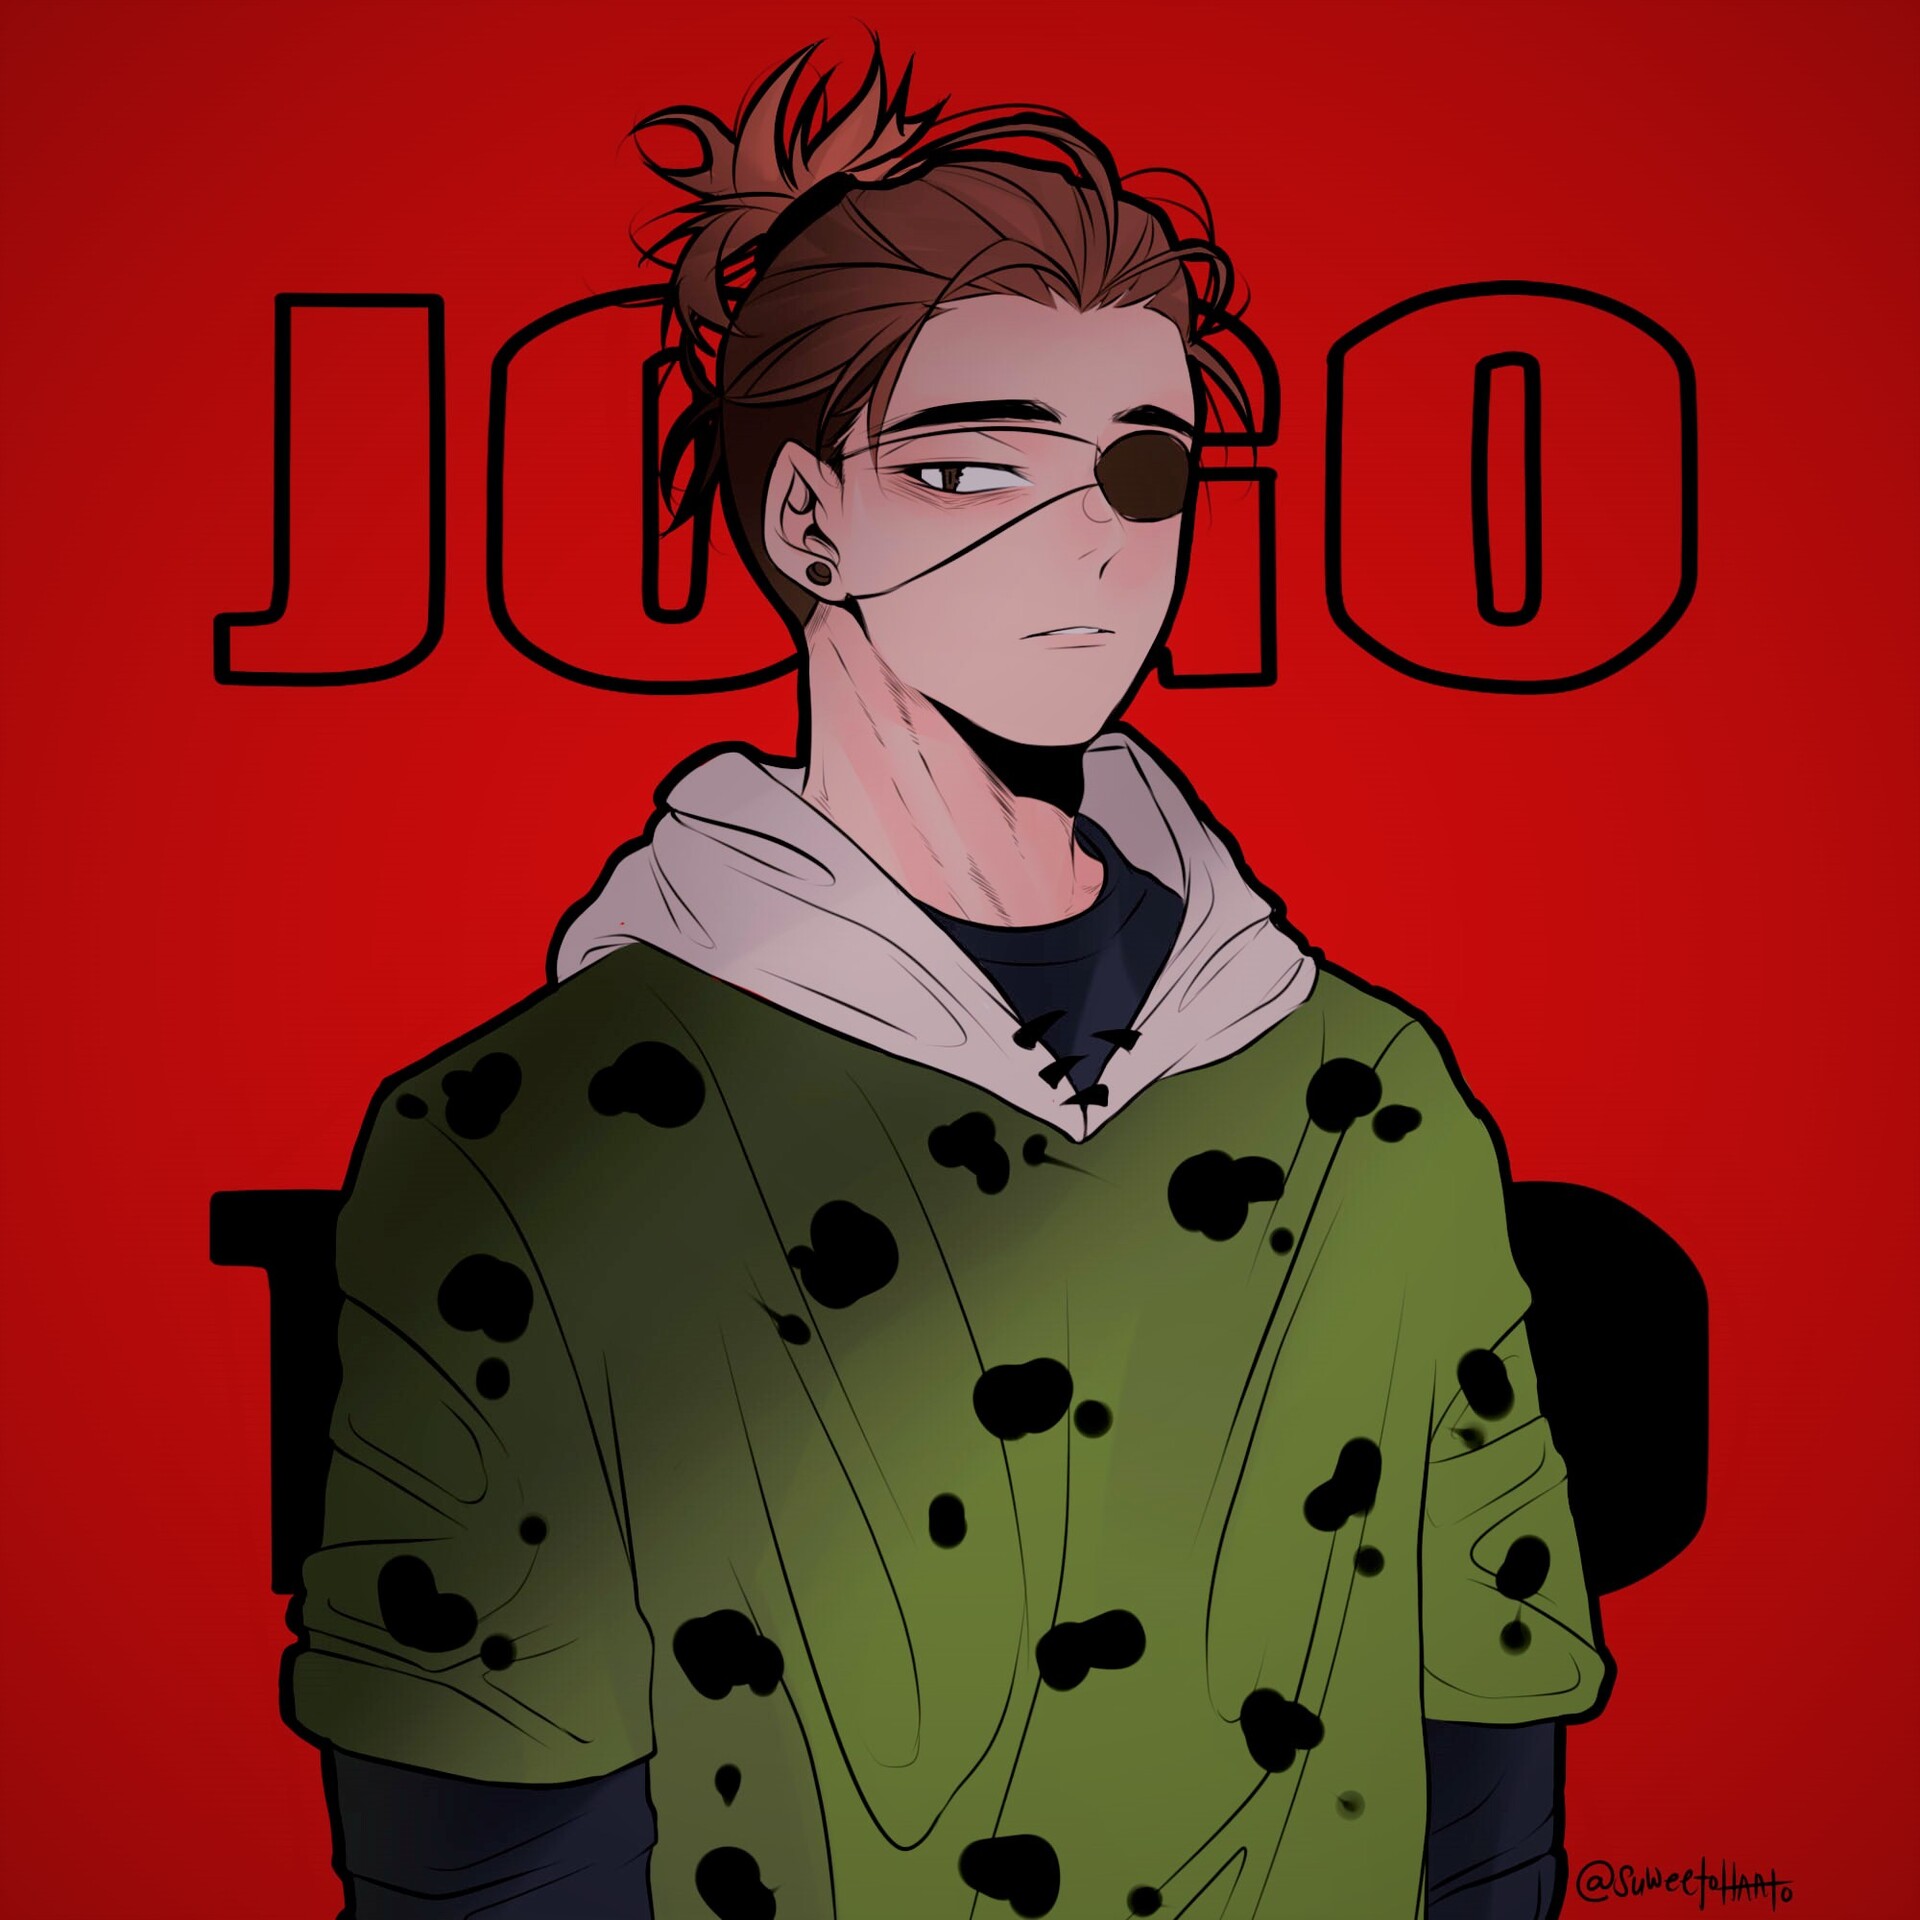 Jogo (Digital Fan Art) | Sticker